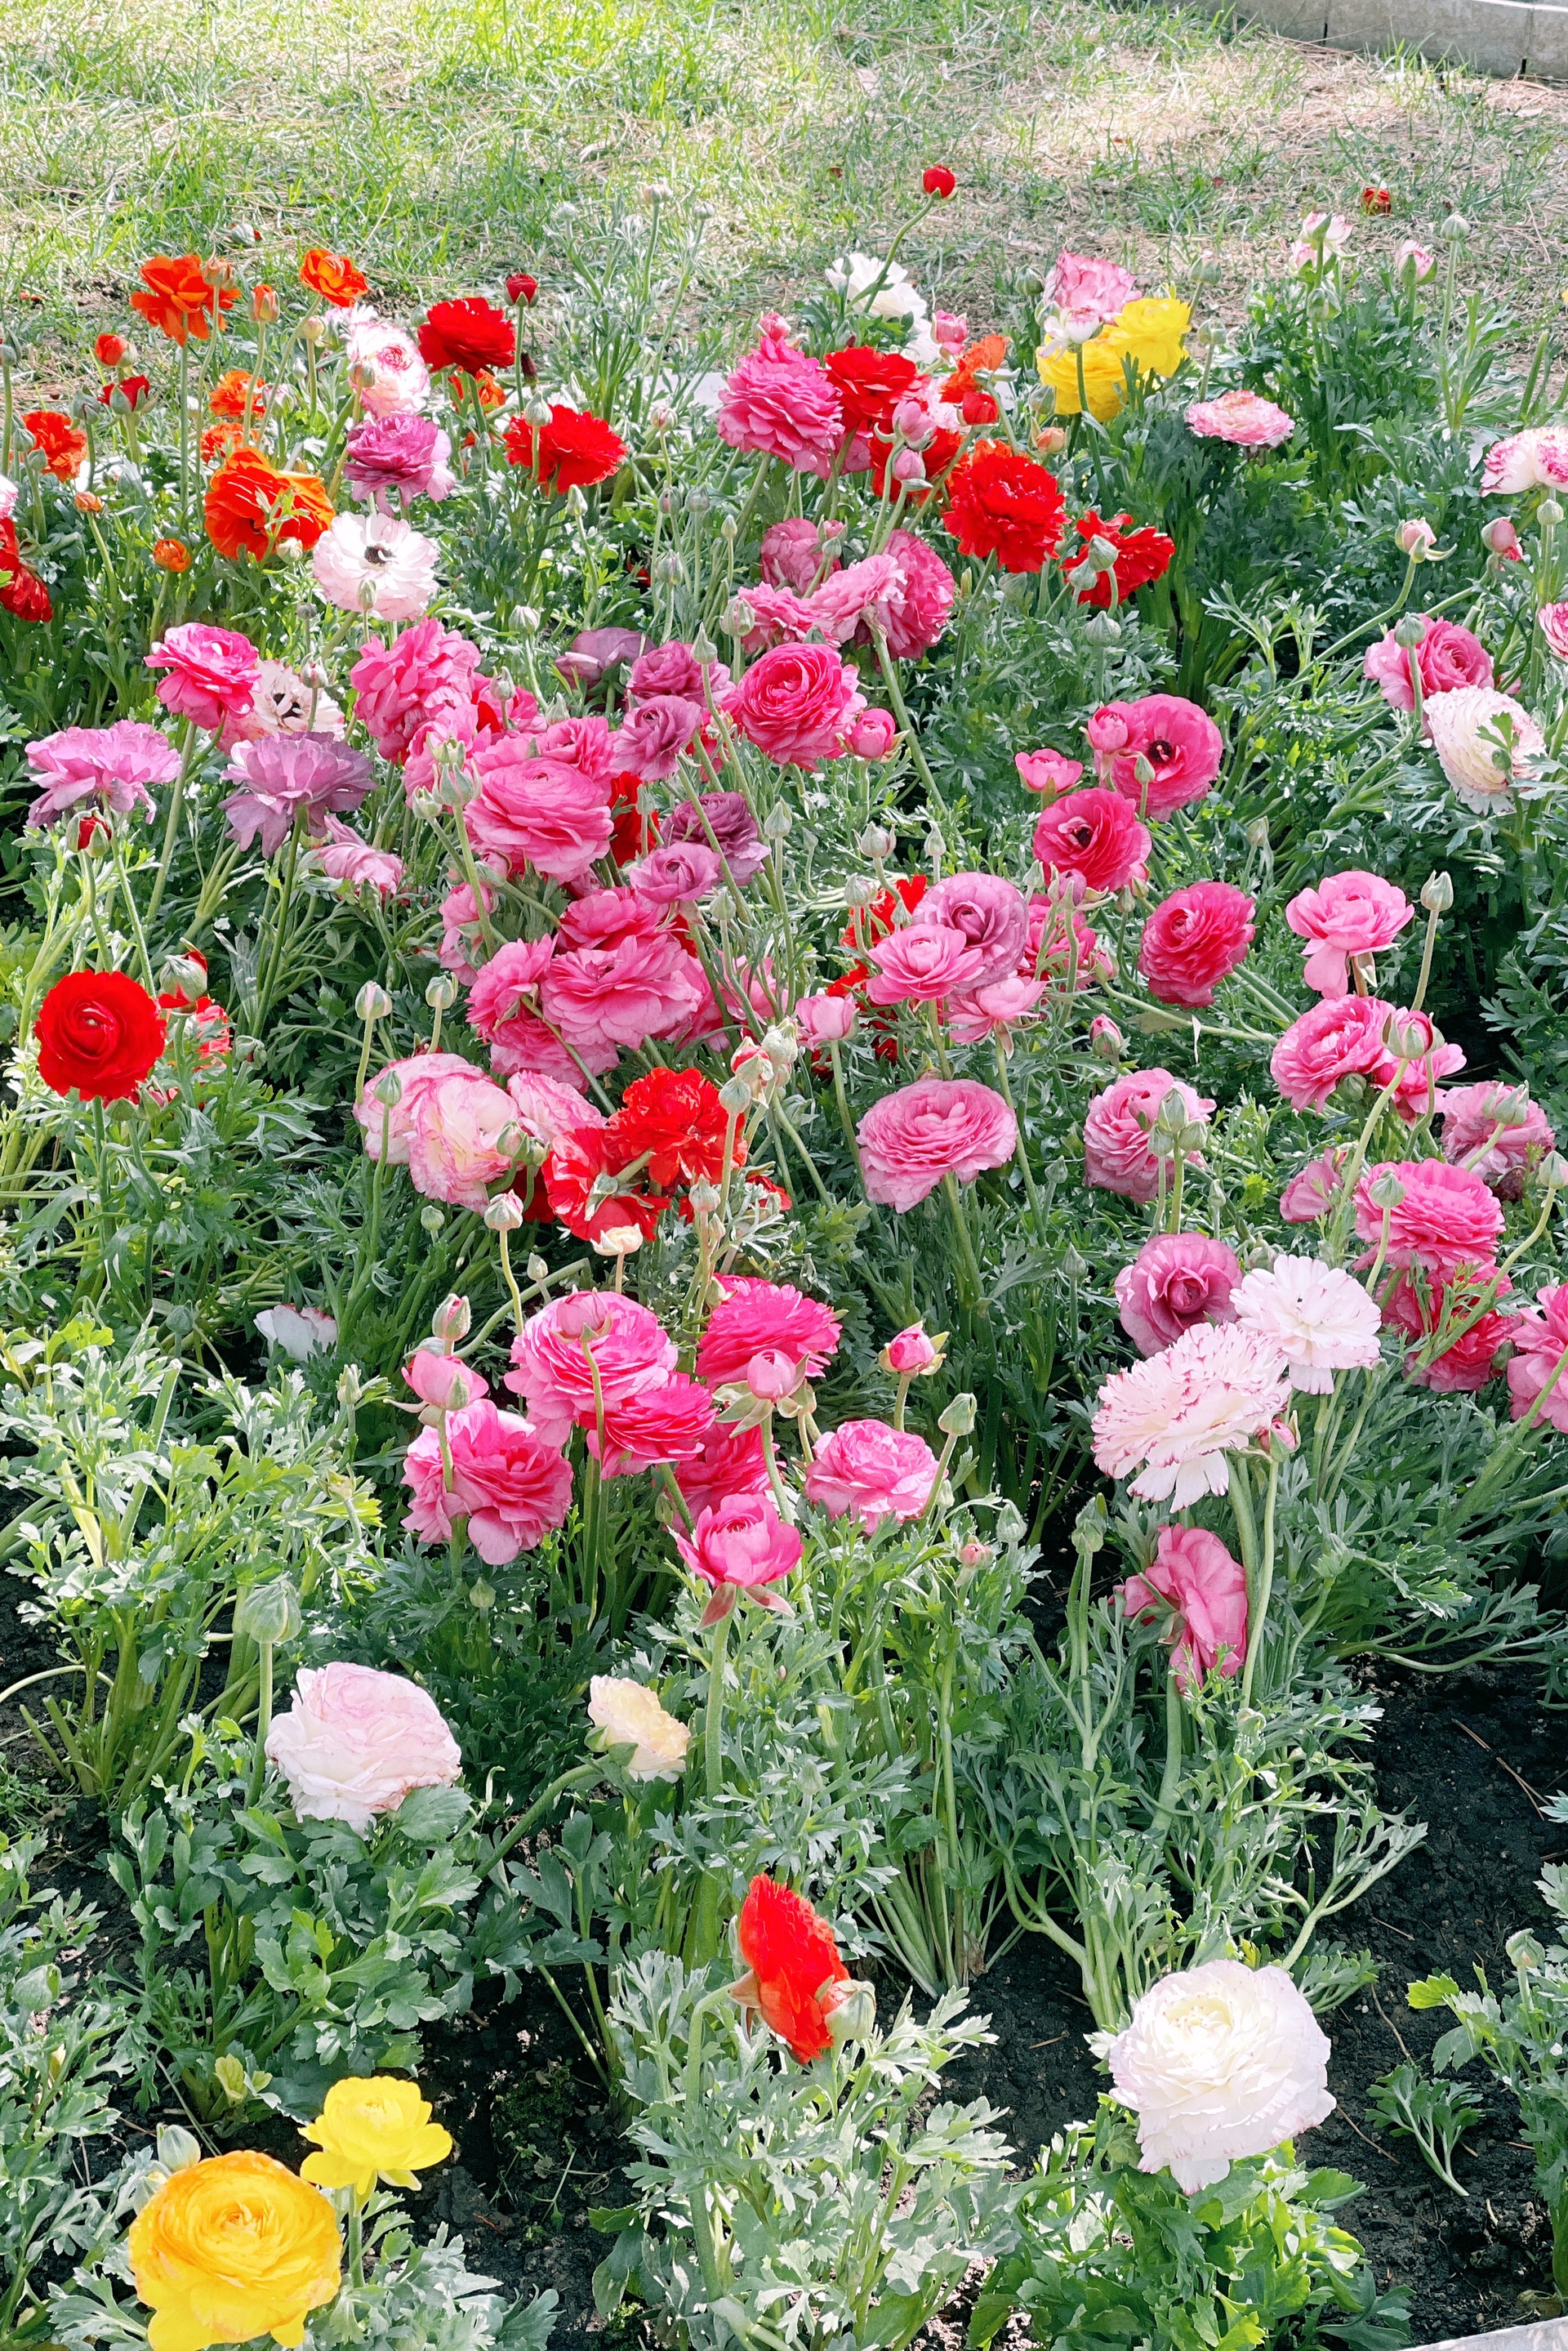 春天必须打卡✔️北京中山公园看花儿朵朵开